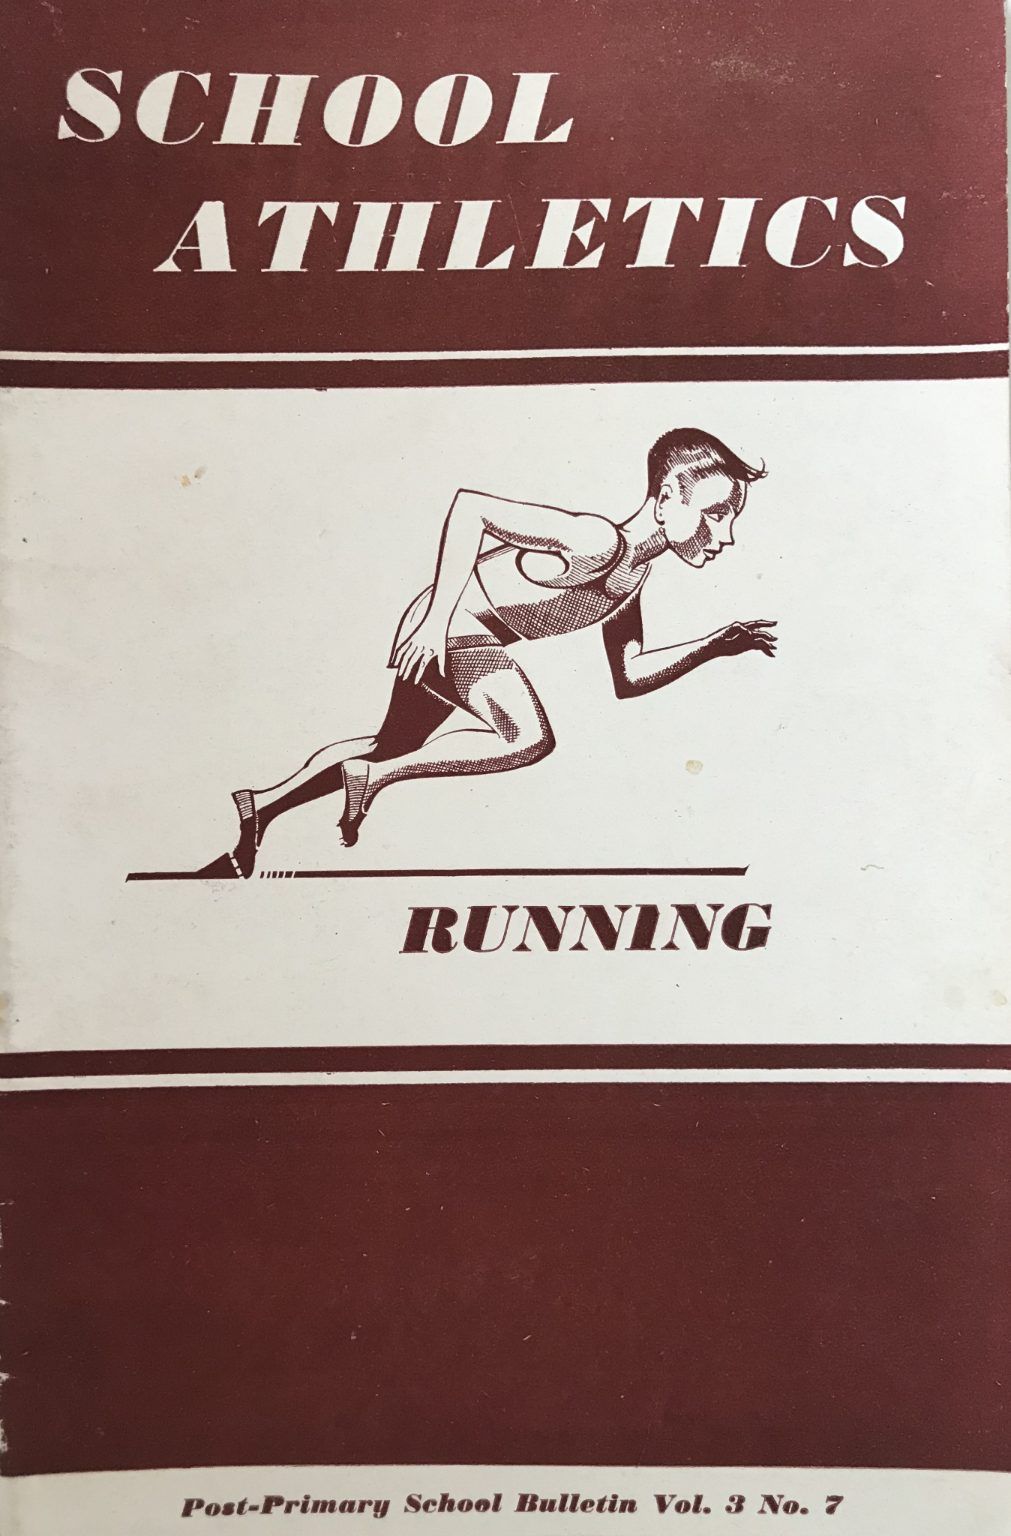 SCHOOL ATHLETICS: Running